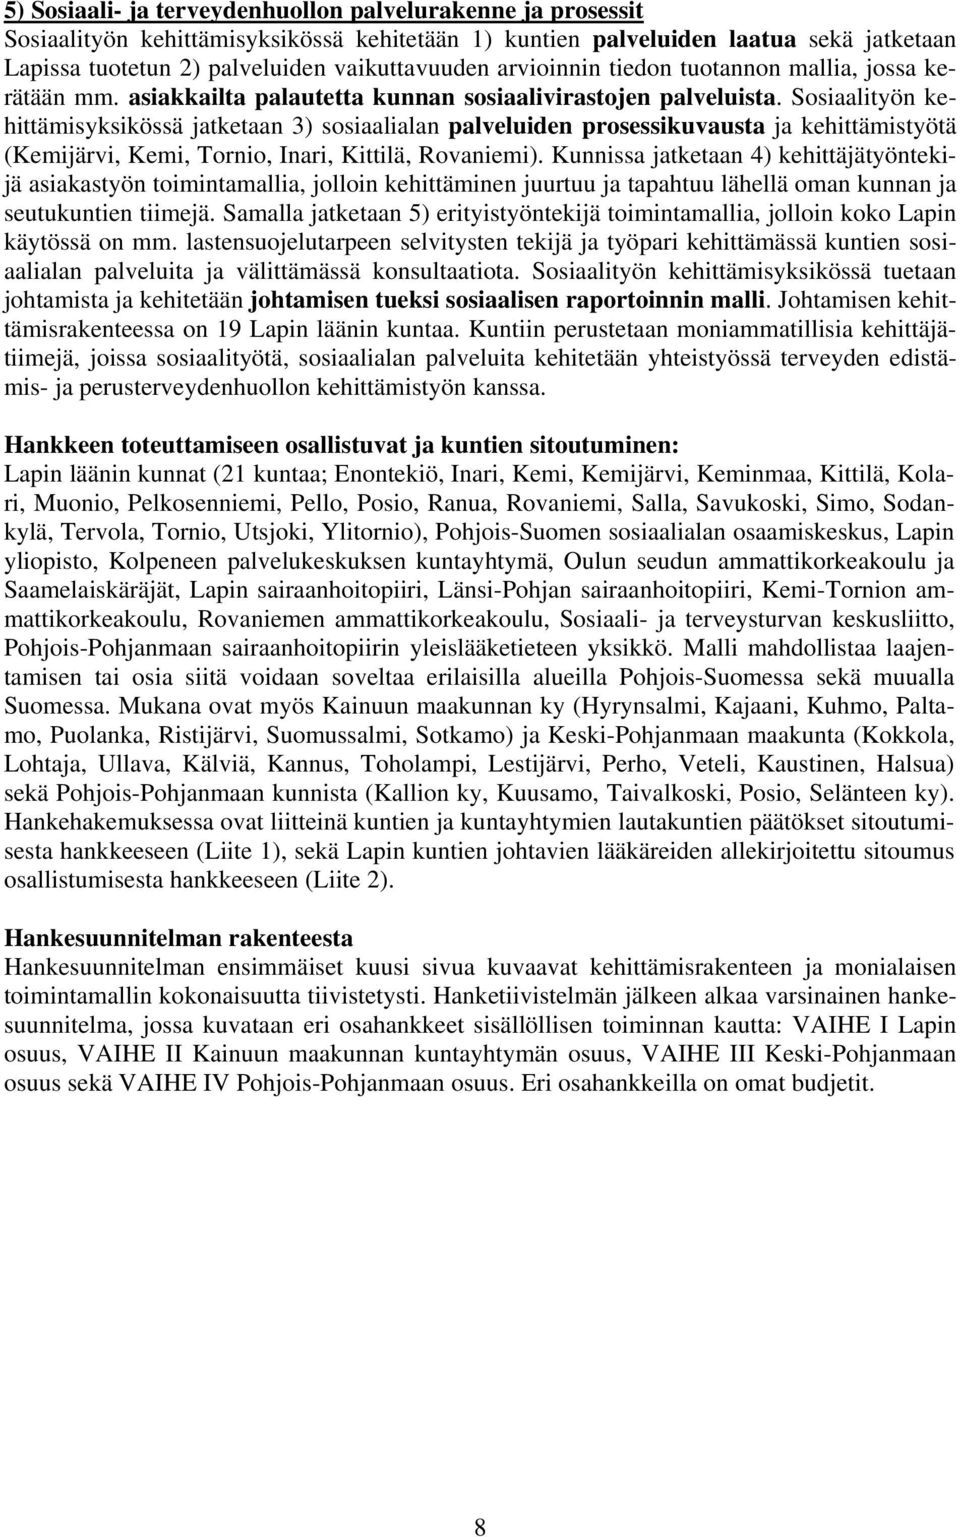 Sosiaalityön kehittämisyksikössä jatketaan 3) sosiaalialan palveluiden prosessikuvausta ja kehittämistyötä (Kemijärvi, Kemi, Tornio, Inari, Kittilä, Rovaniemi).